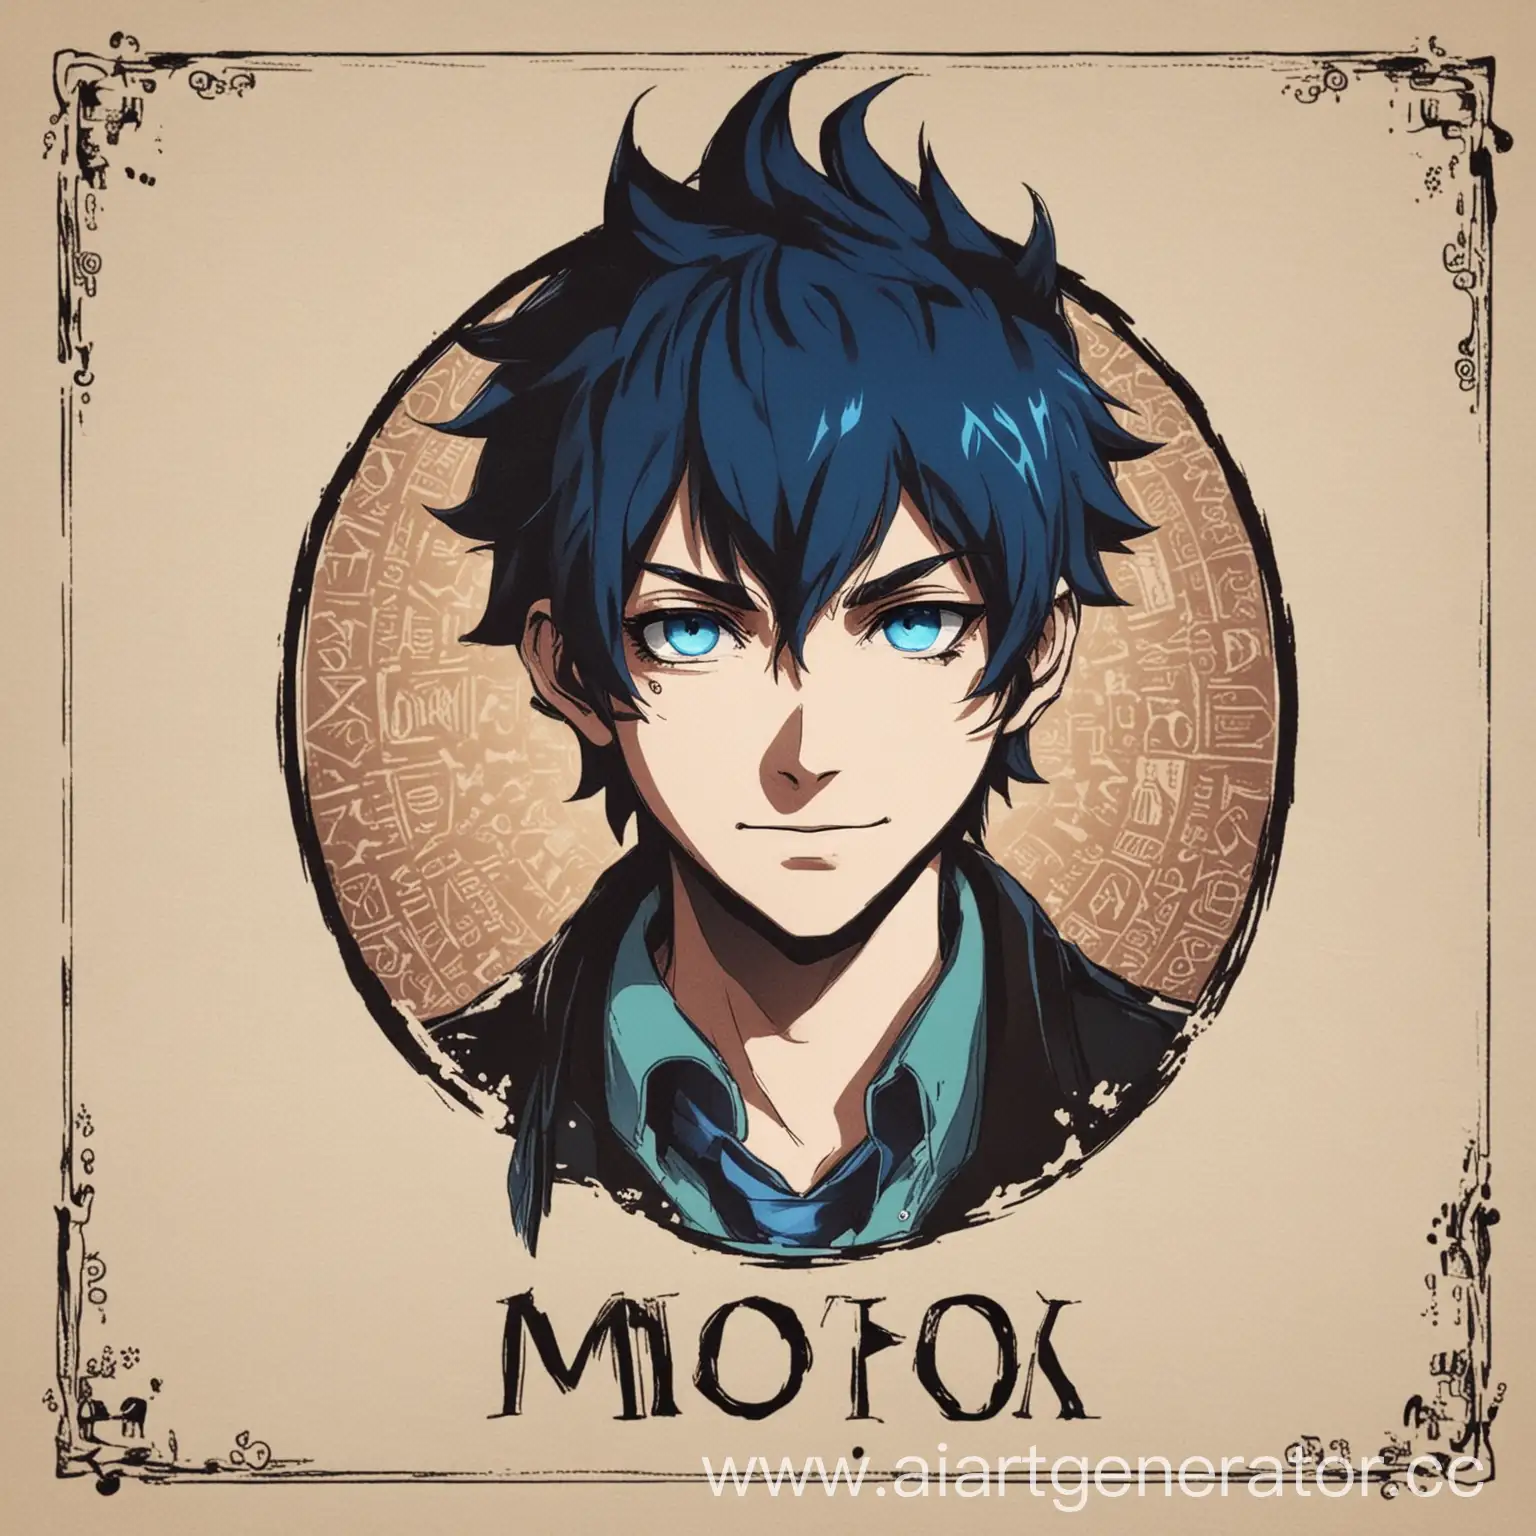 профиль для аватара в монополии с ником b1rusha, в аниме стиле, синий экзорцист, демон, синие пламя